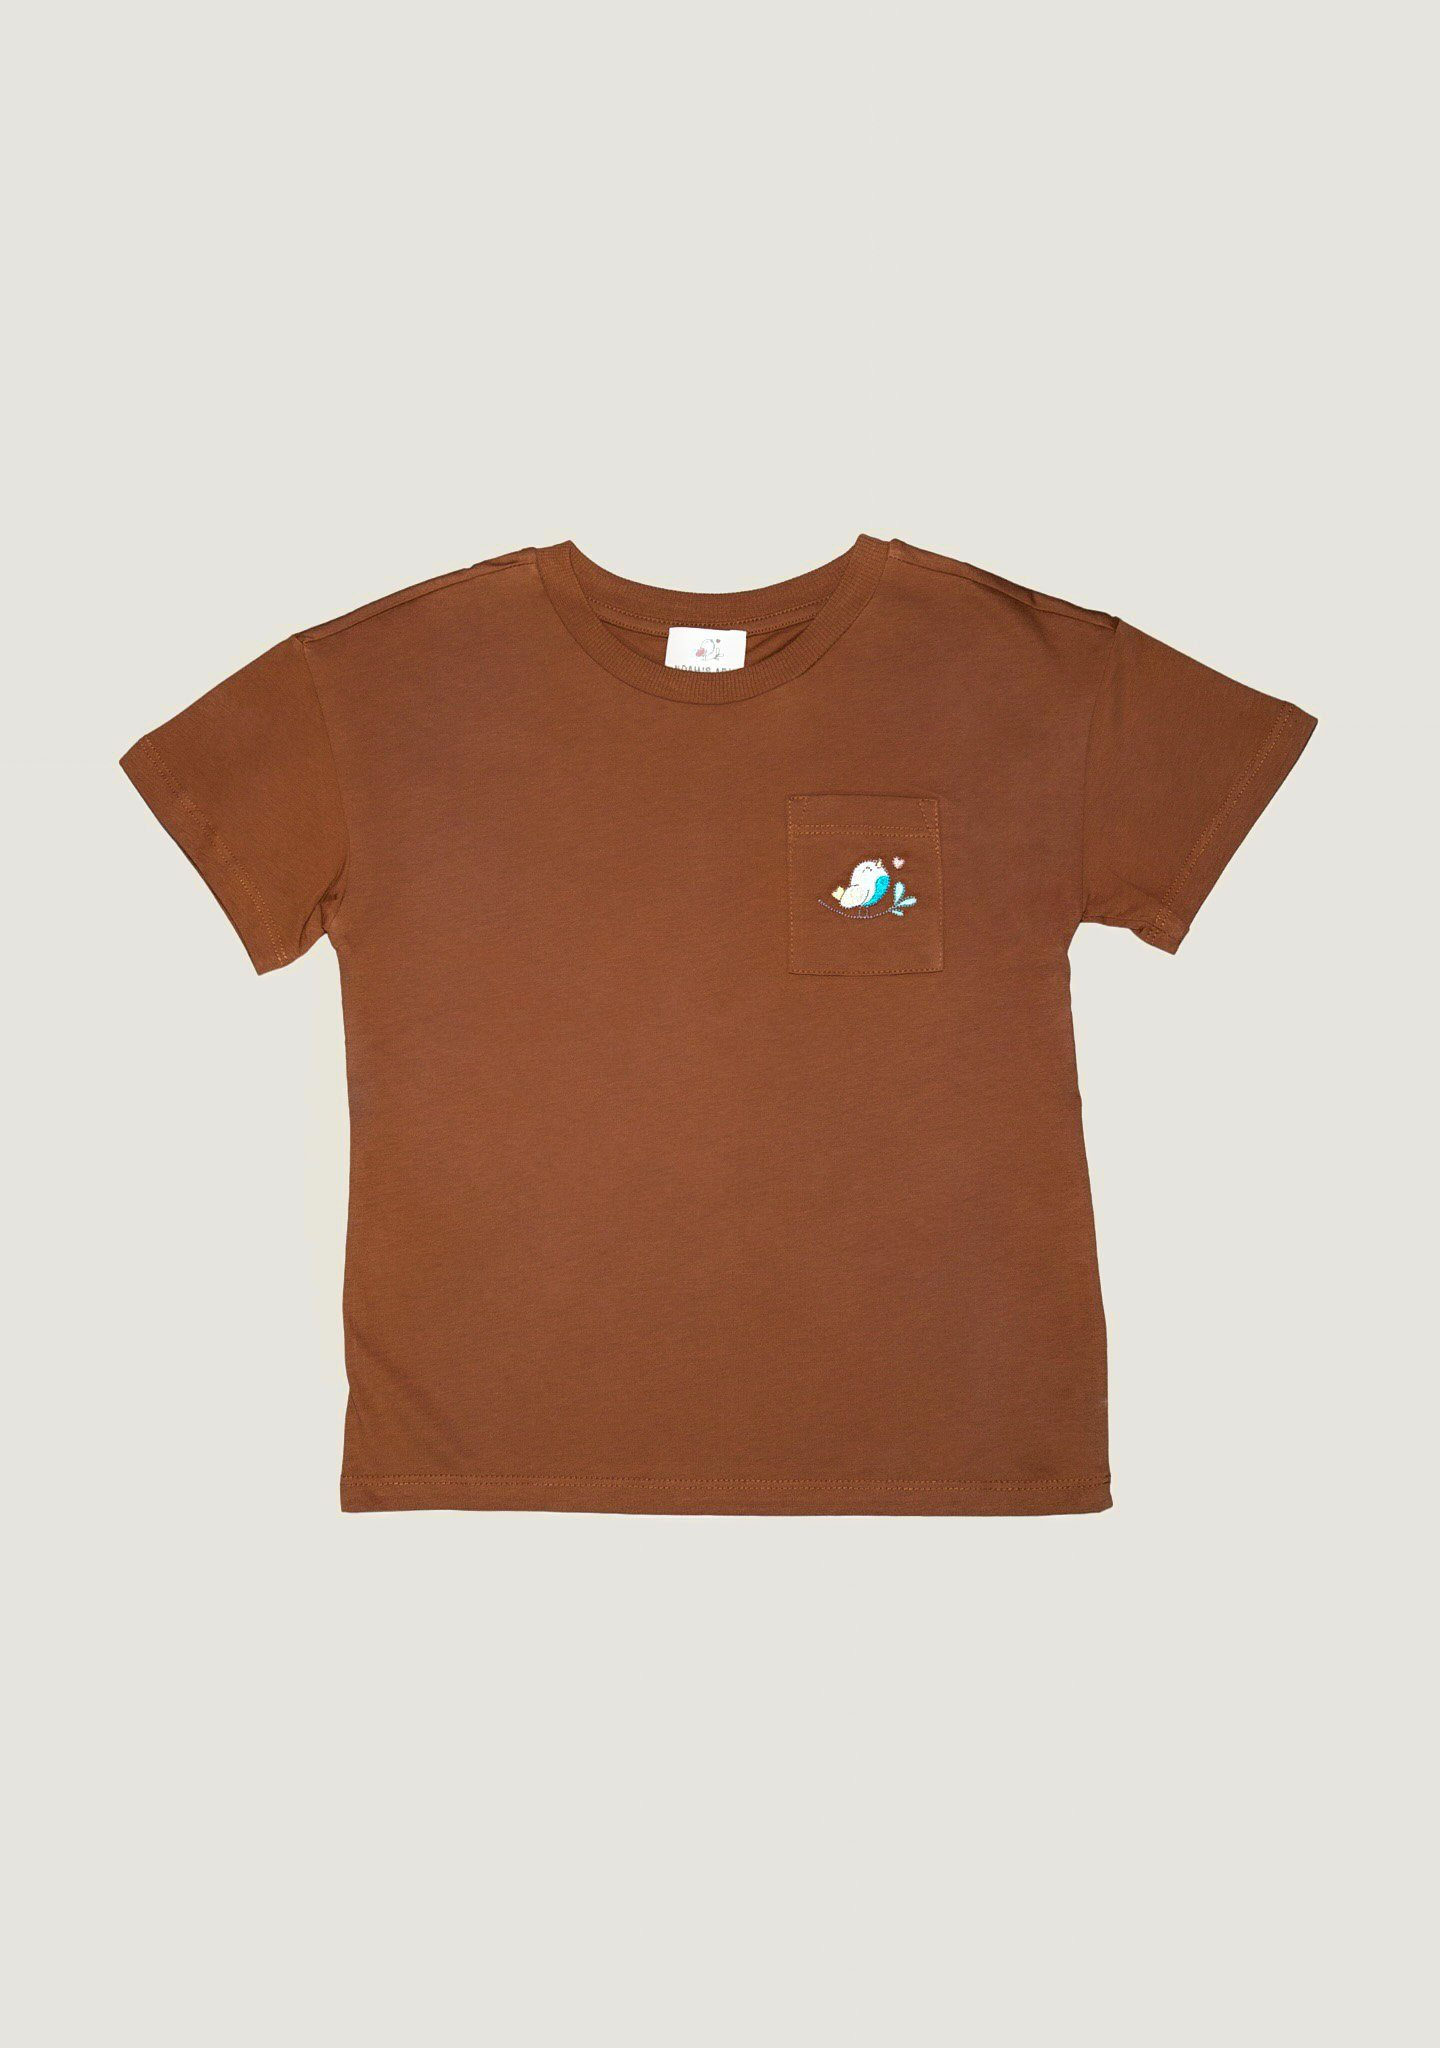 T-Shirt Shirt Unifarbe, für Baumwolle Brusttasche Ark mit Baumwolle 100% Kastanienbraun Noah's Kinder aus aus unisex, in